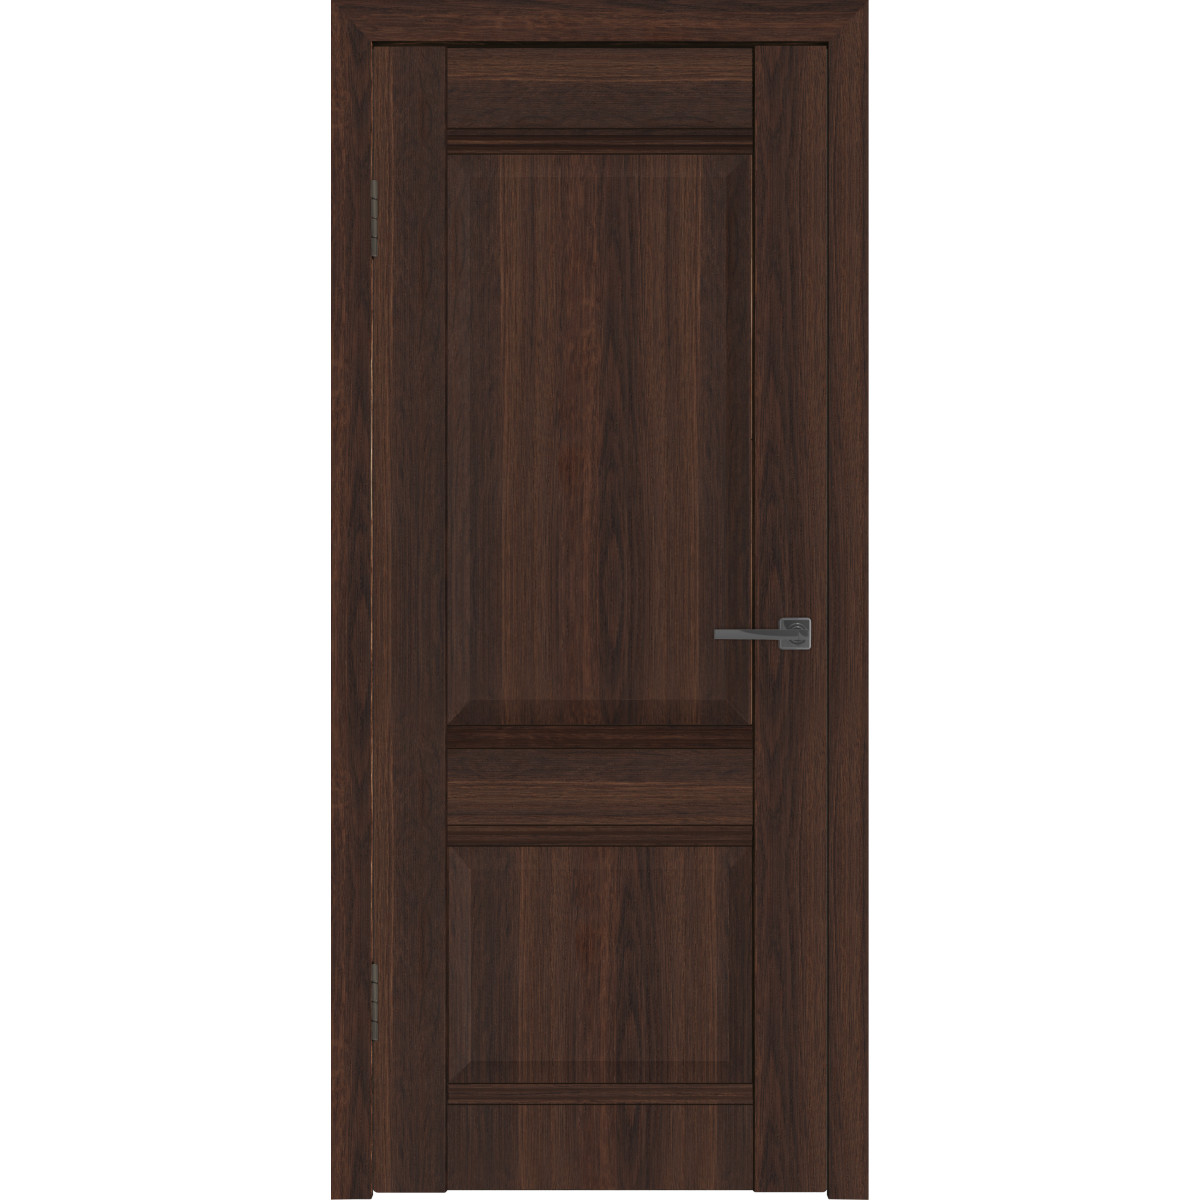 Дверь межкомнатная глухая с замком и петлями в комплекте Классик 2 70x200 см ПВХ цвет каштан